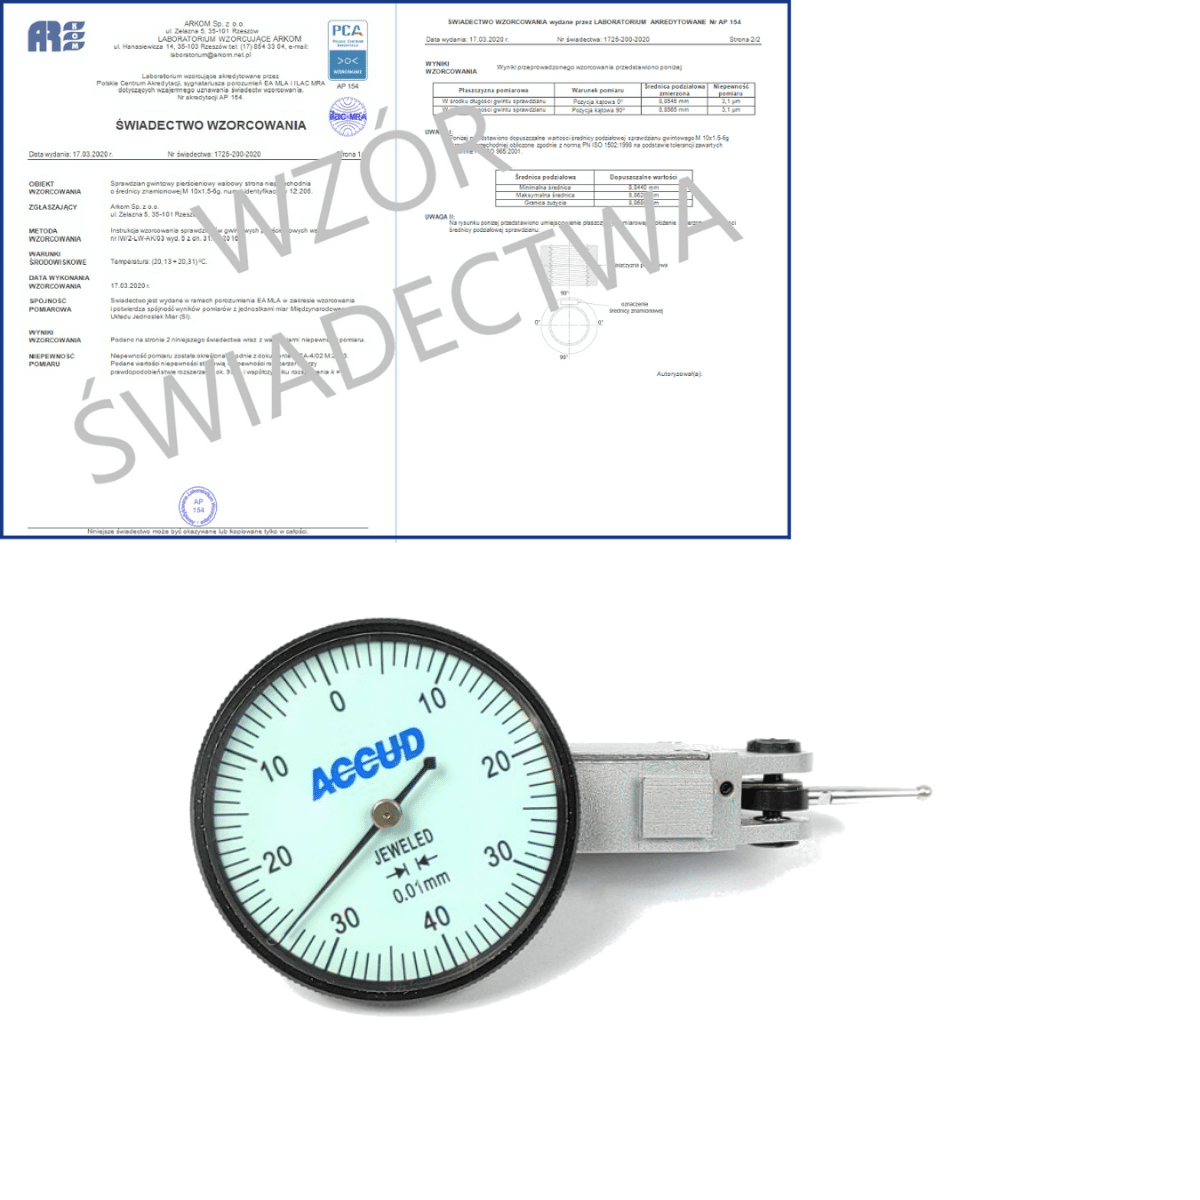 ACCUD czujnik dźwigniowo-zębaty poziomy 0-0.08/0.01mm + świadectwo wzorcowania PCA 261-008-12 WZORC (Zdjęcie 1)